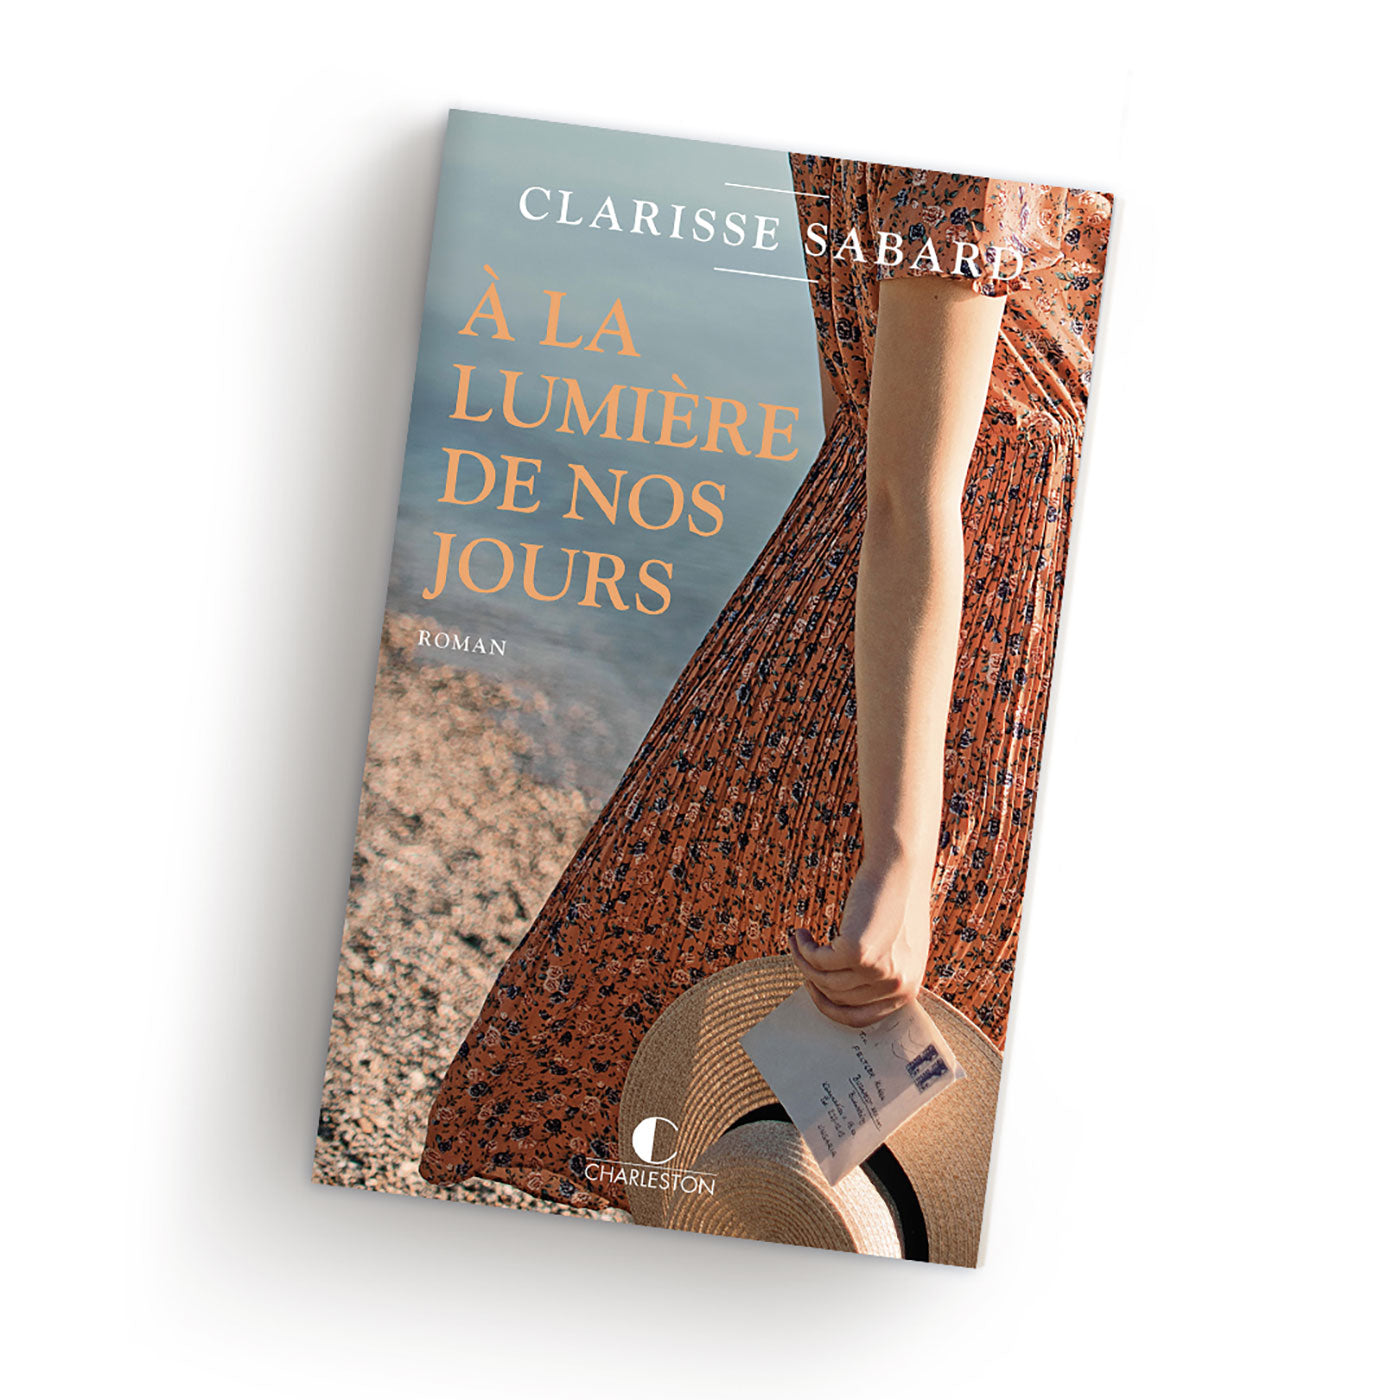 Les lettres de Rose - Prix du livre romantique, Clarisse Sabard